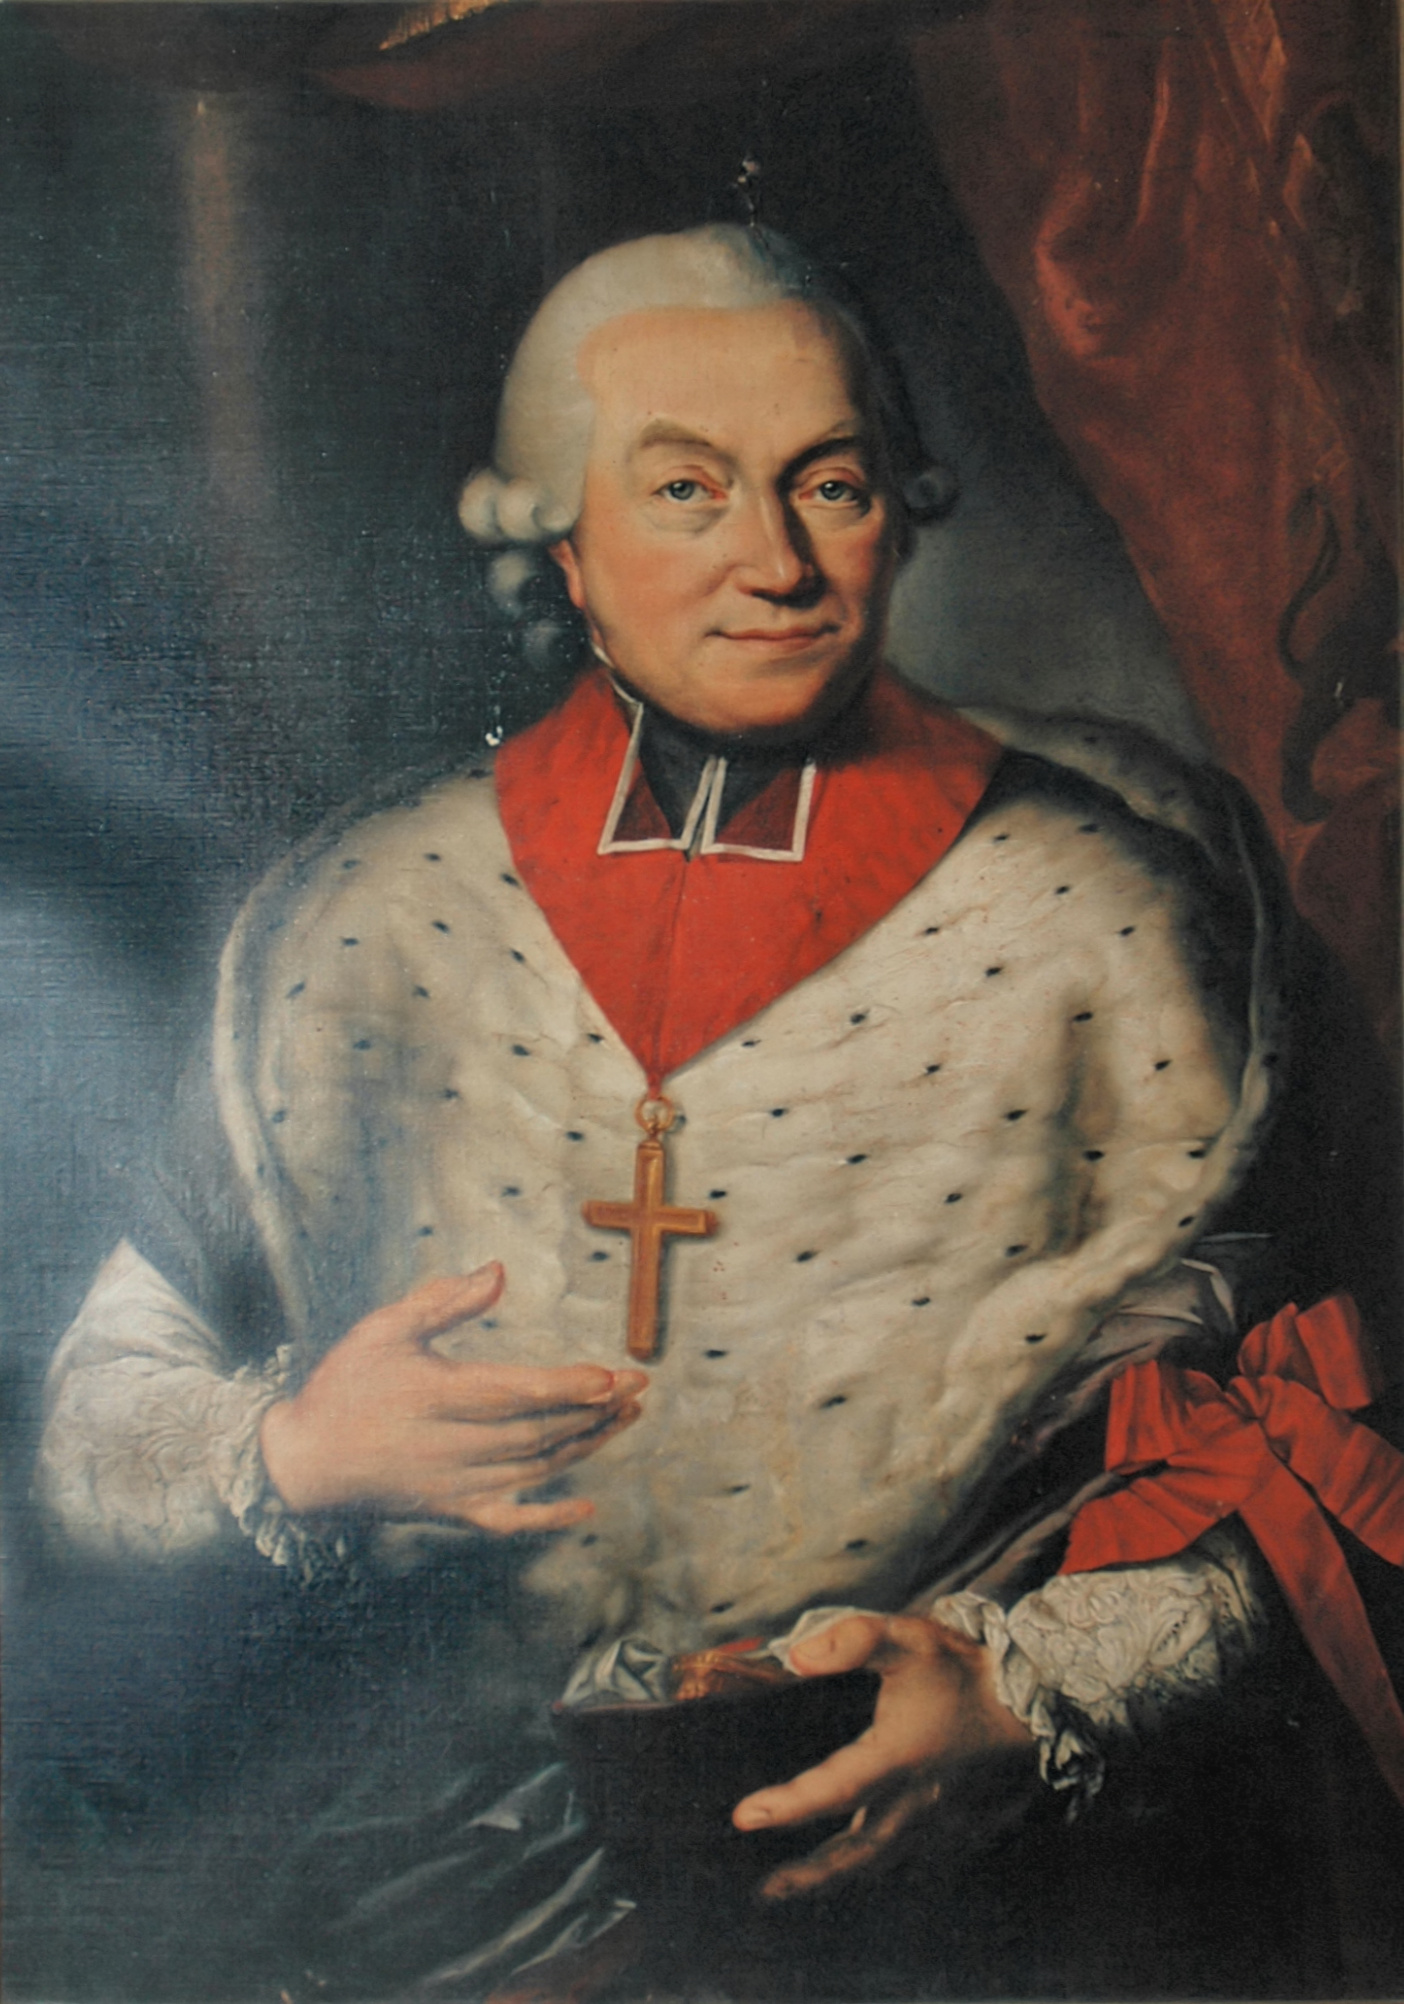 Caesar Constantin Franz von Hoensbroech